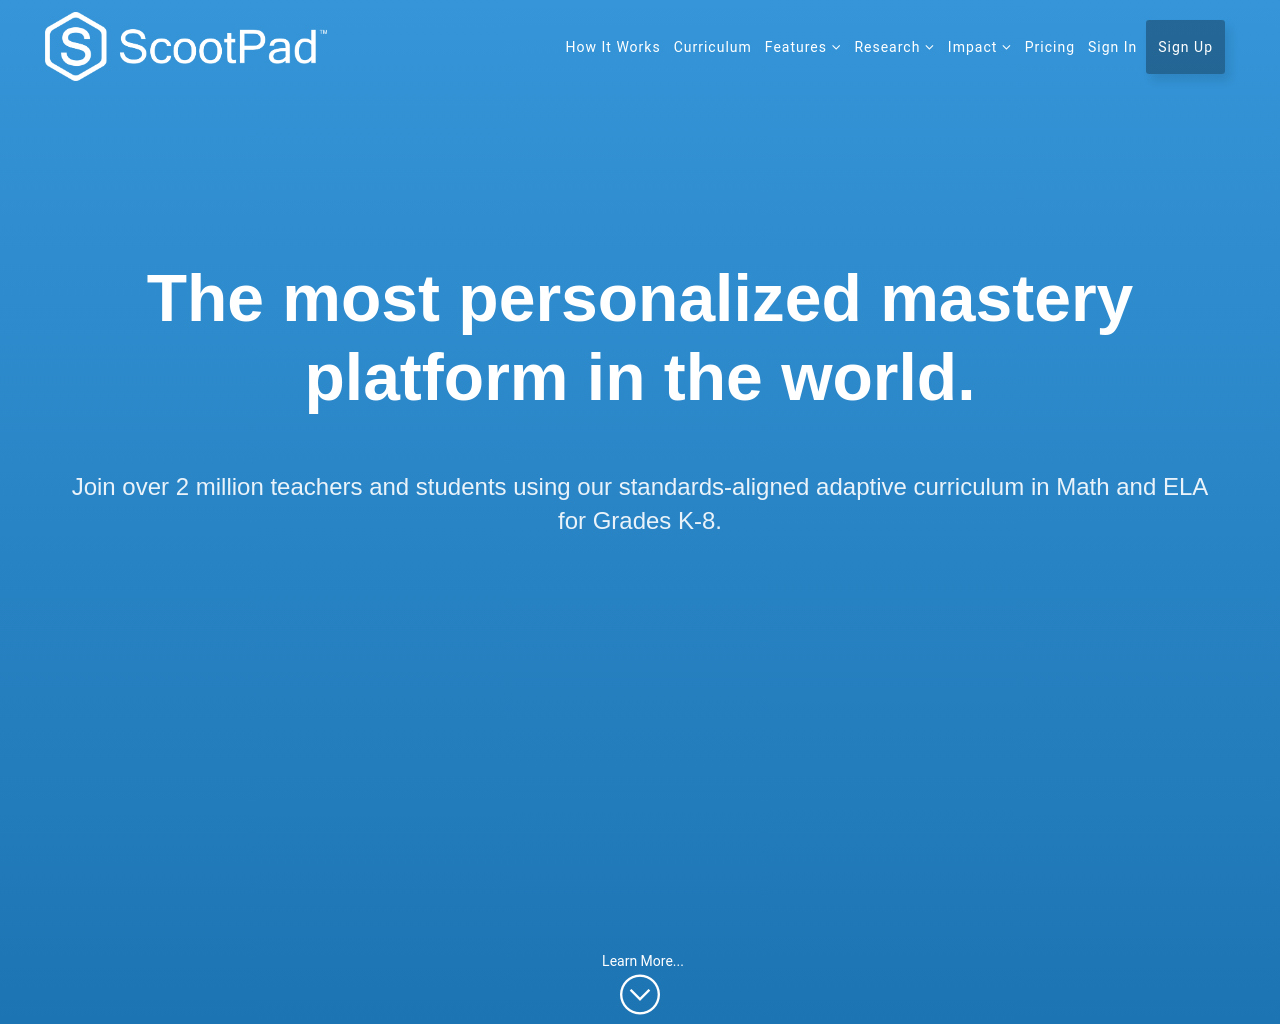 scootpad.com